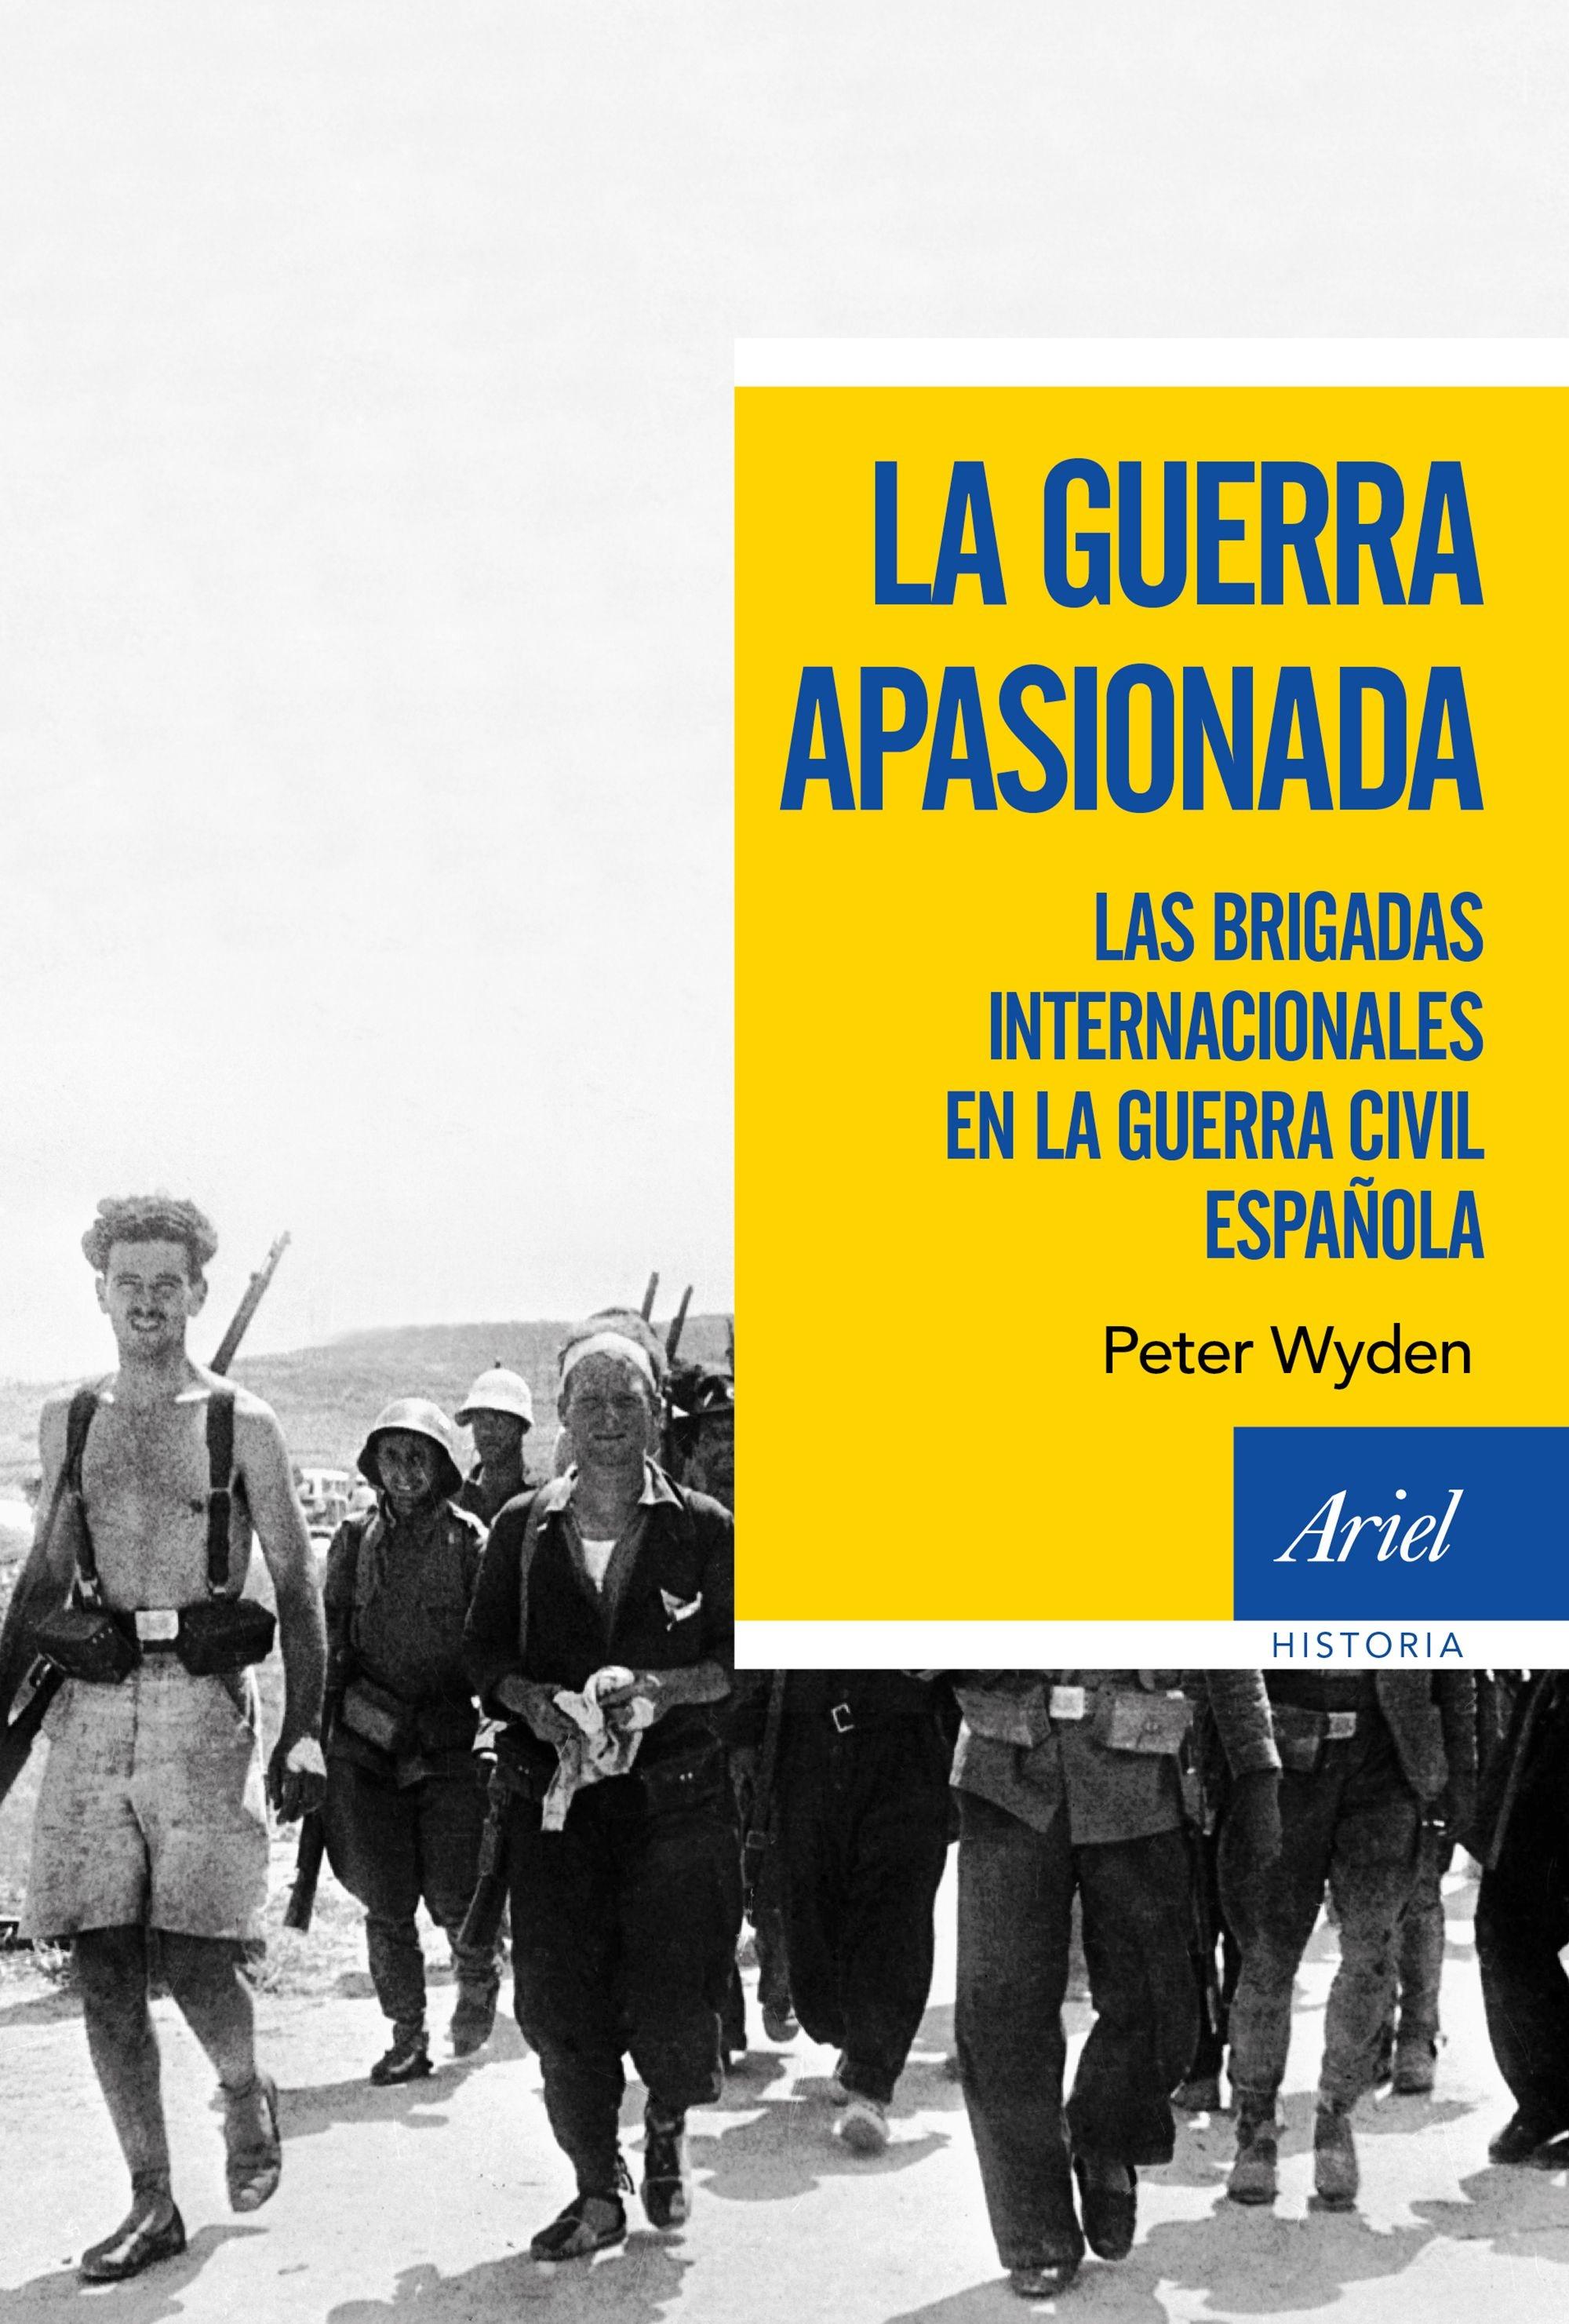 La guerra apasionada "Las brigadas internacionales en la guerra civil española"